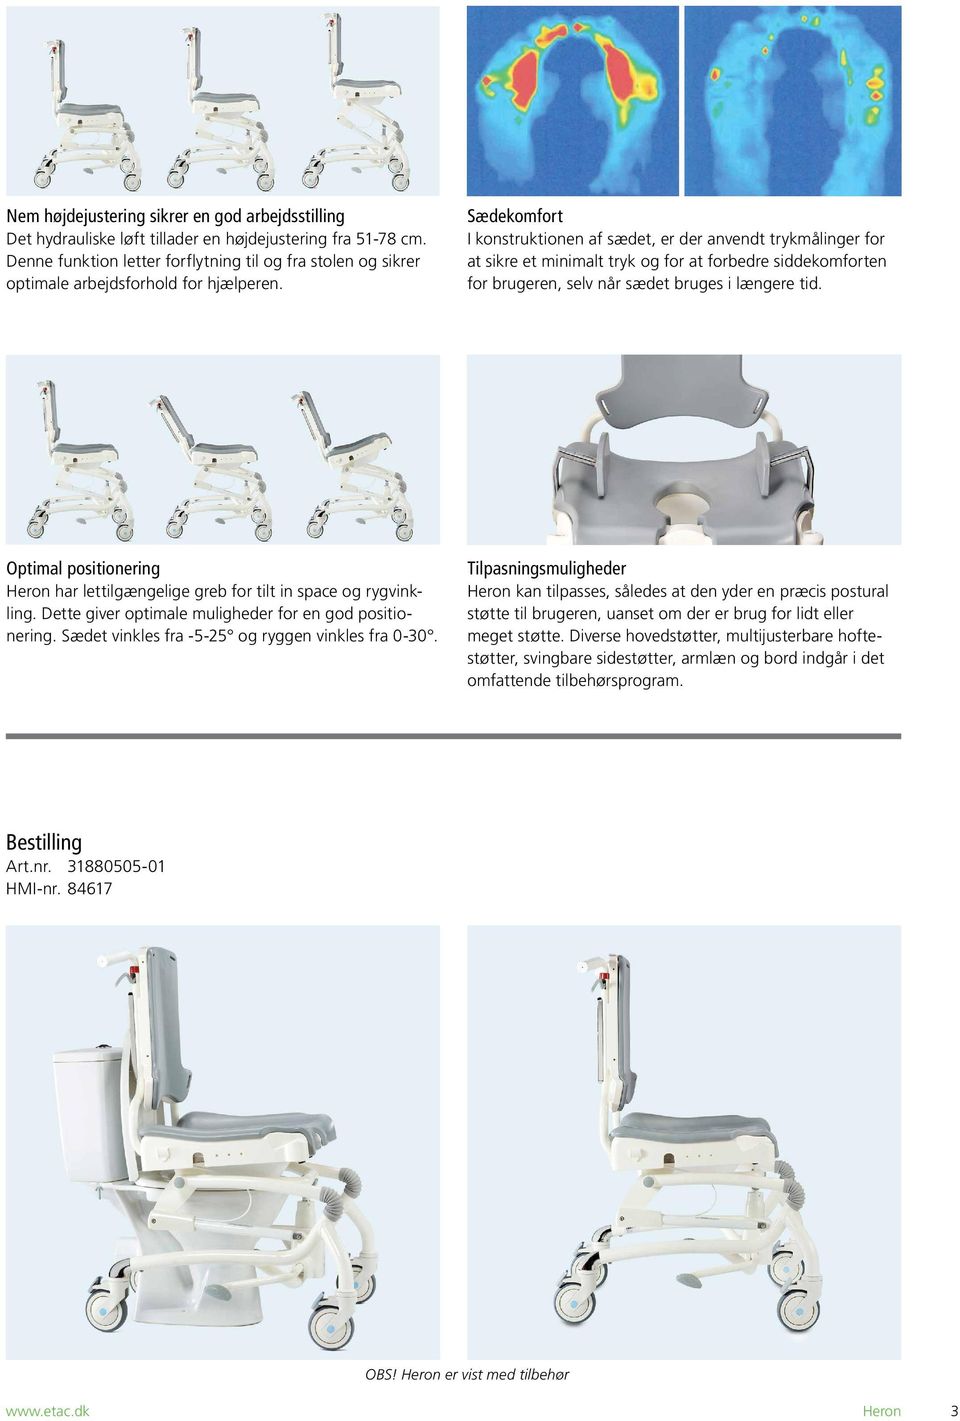 Sædekomfort I konstruktionen af sædet, er der anvendt trykmålinger for at sikre et minimalt tryk og for at forbedre siddekomforten for brugeren, selv når sædet bruges i længere tid.